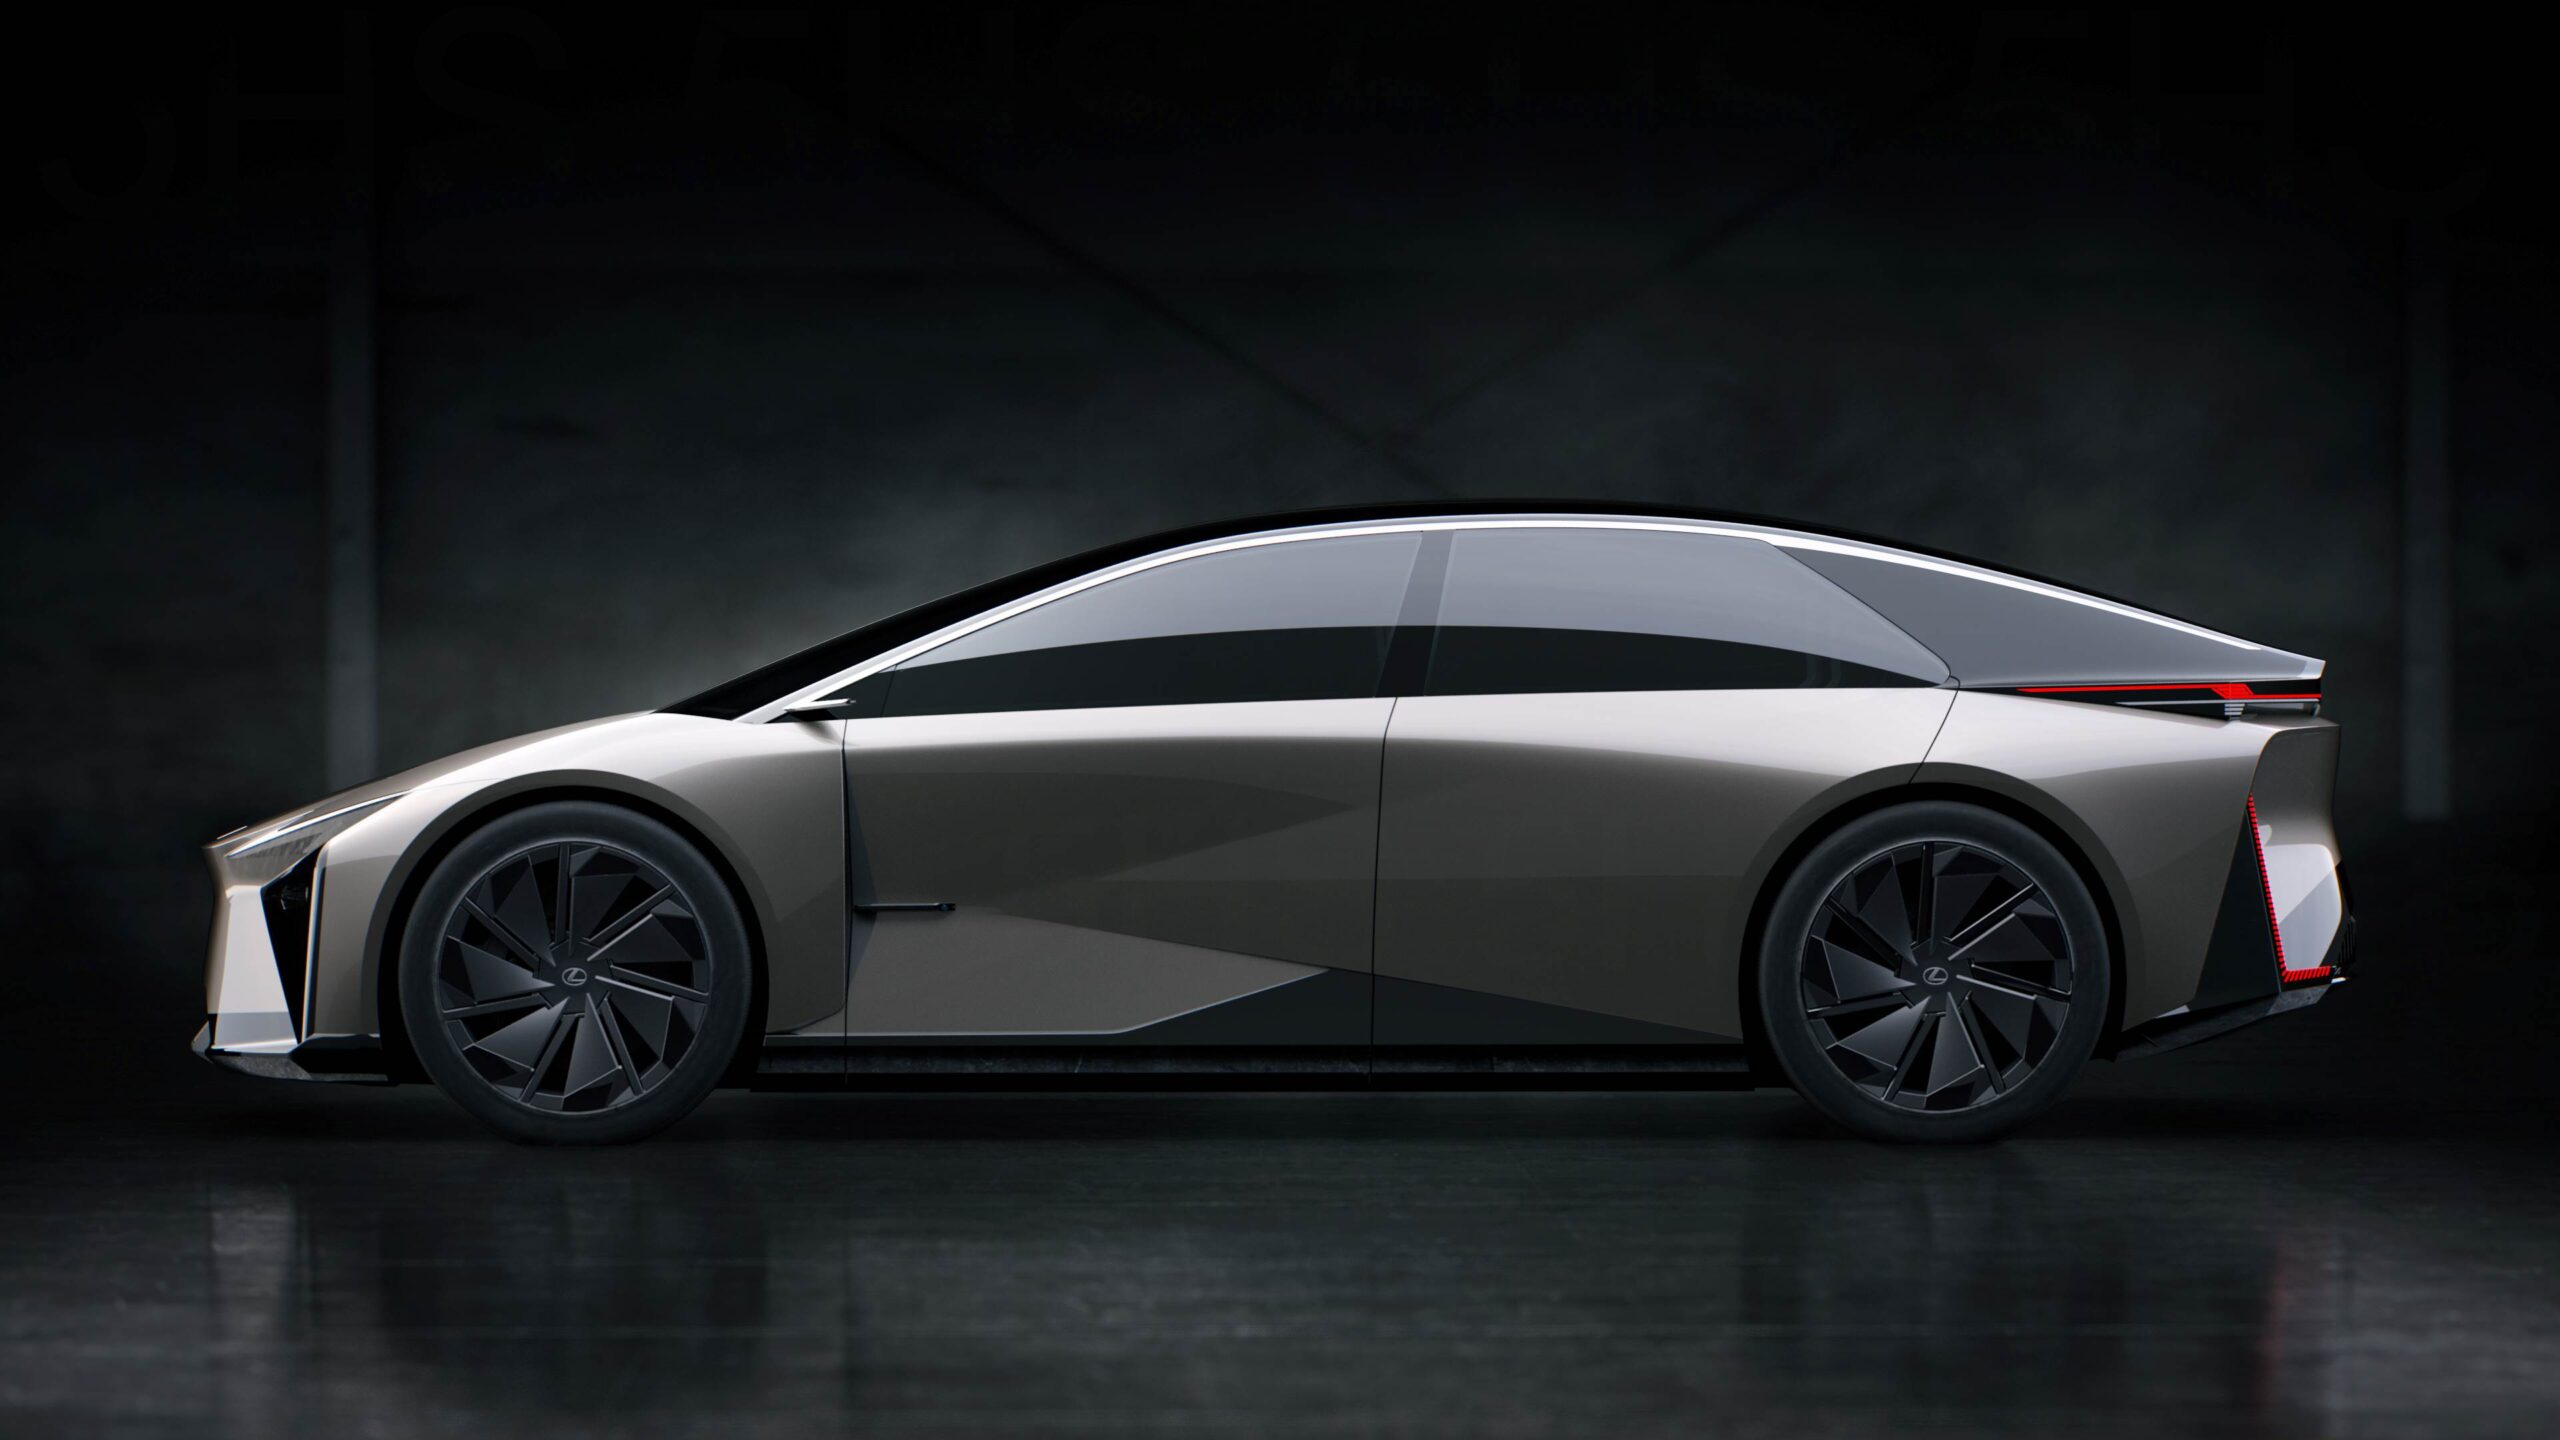 LF-ZC (Lexus Future Zero-emission Catalyst)